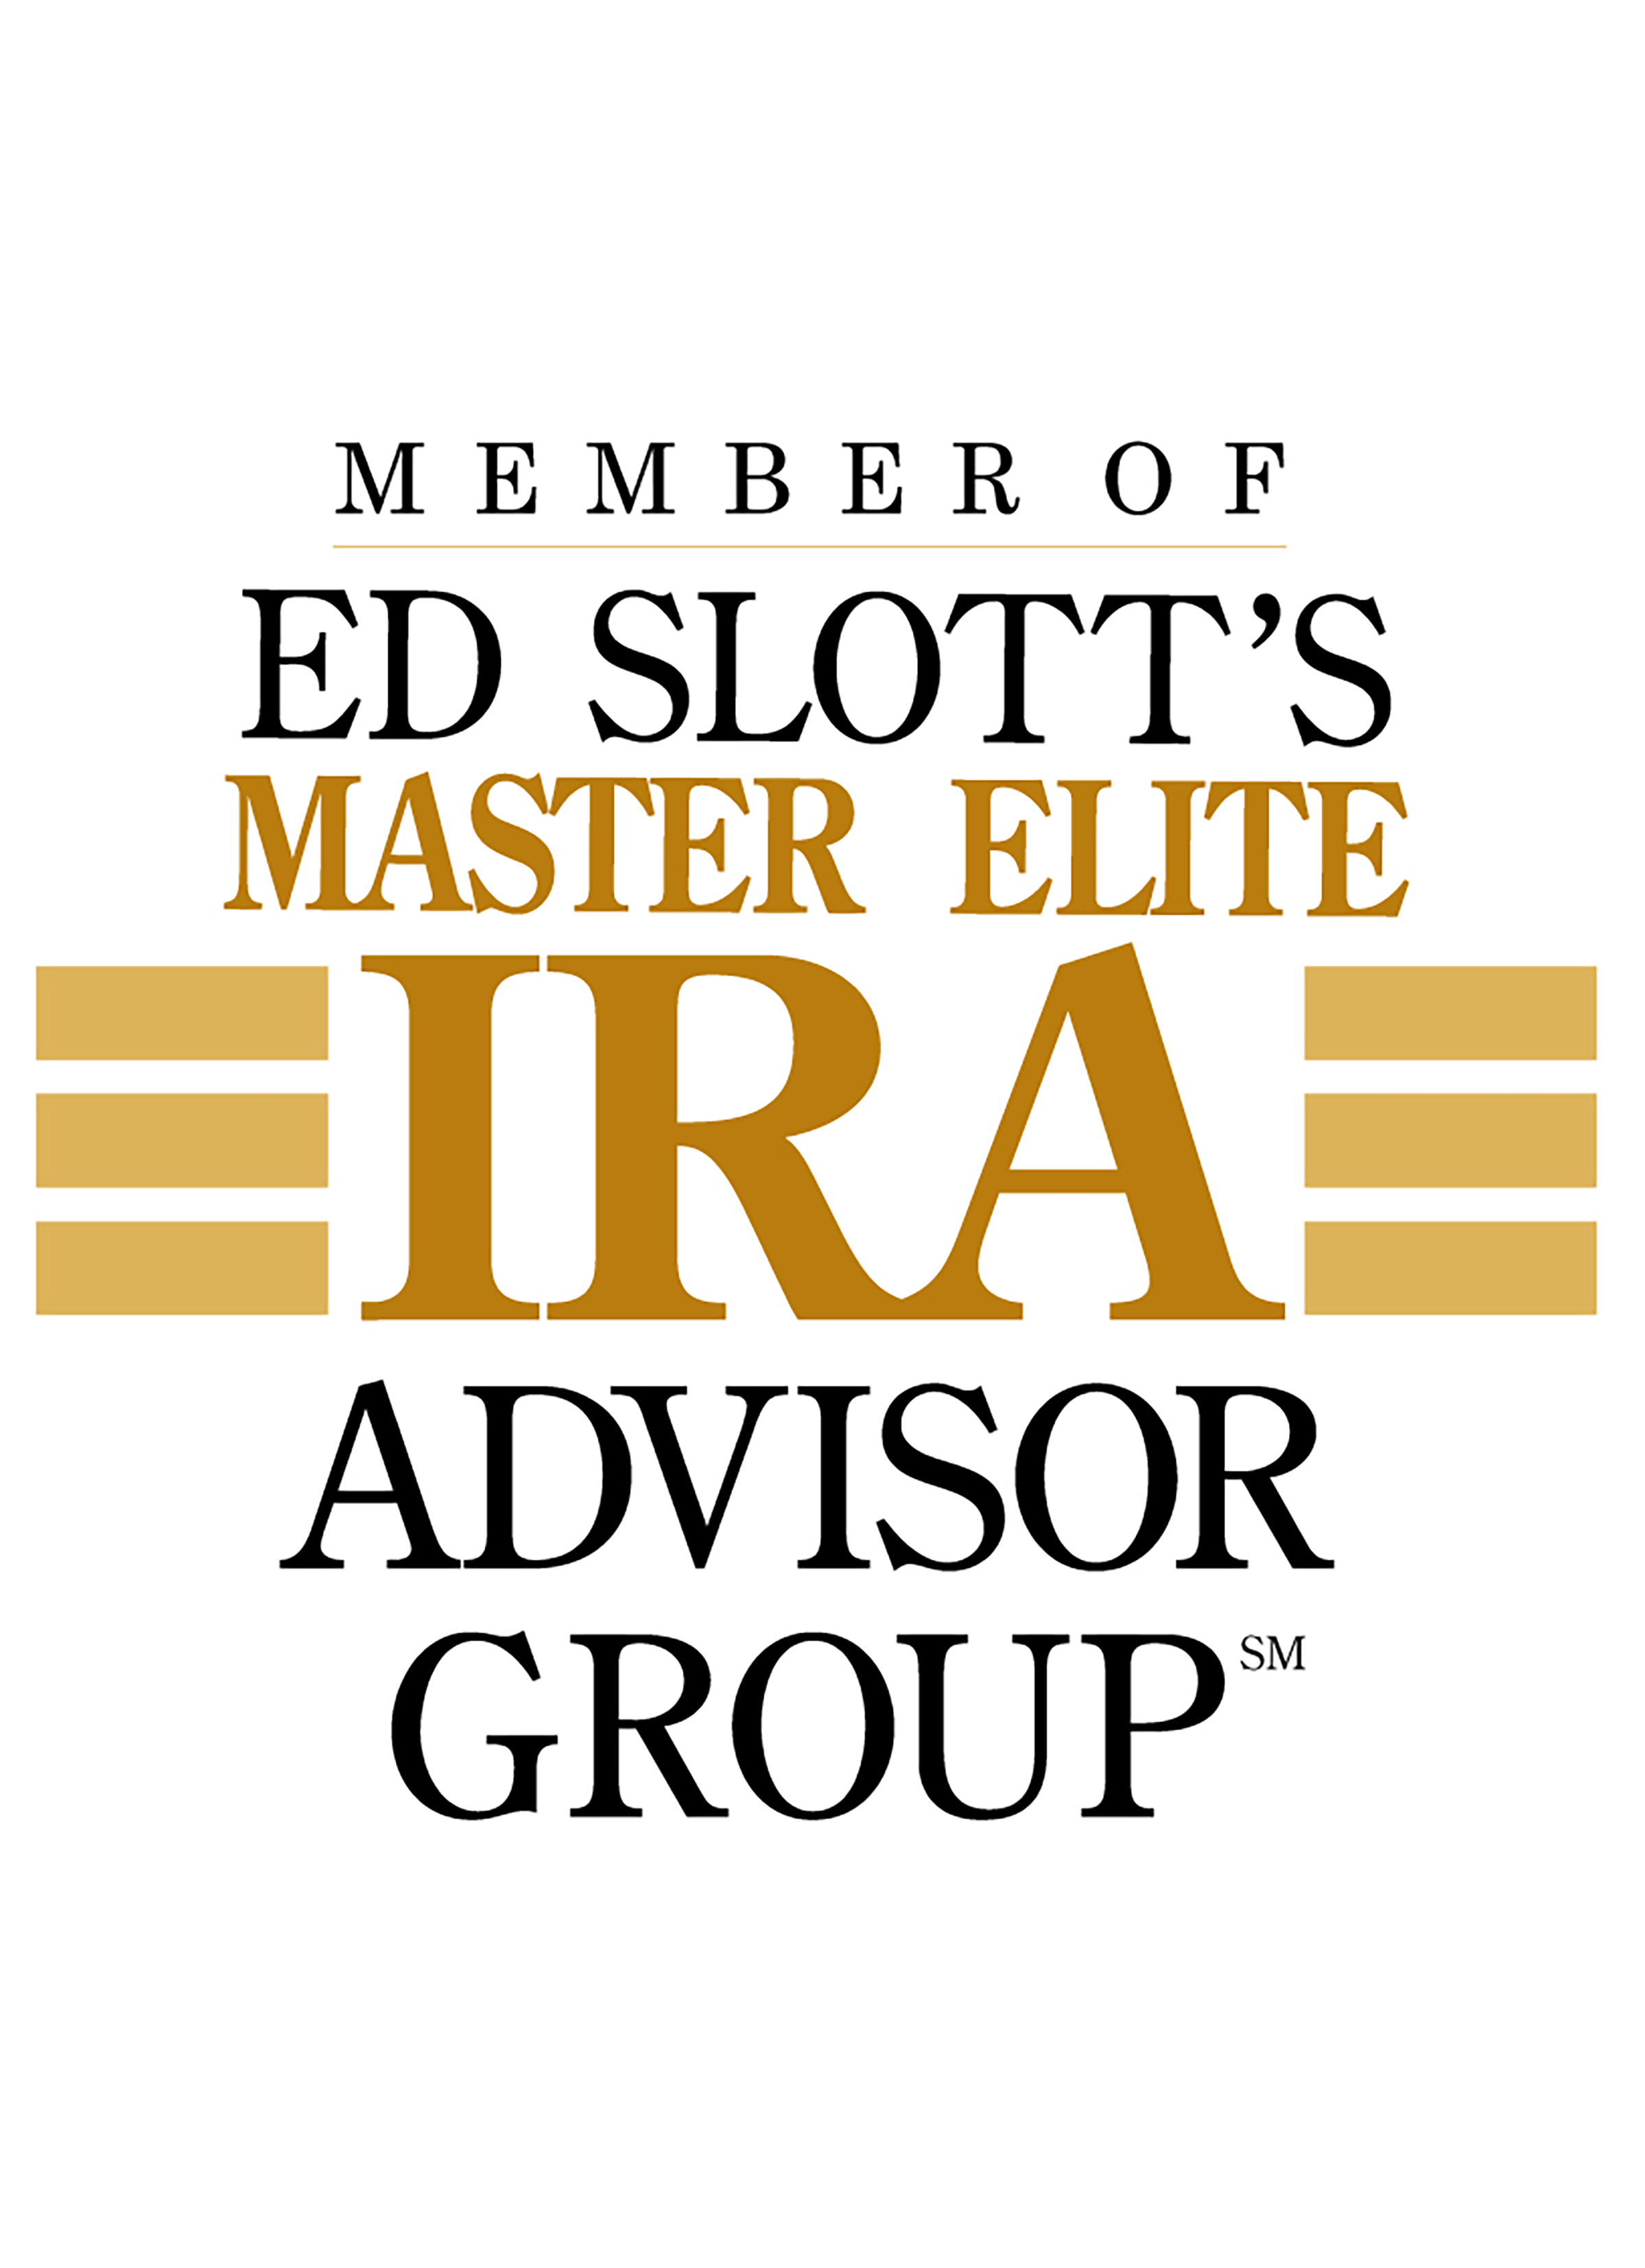 Elite Master logo 2398 X 3306